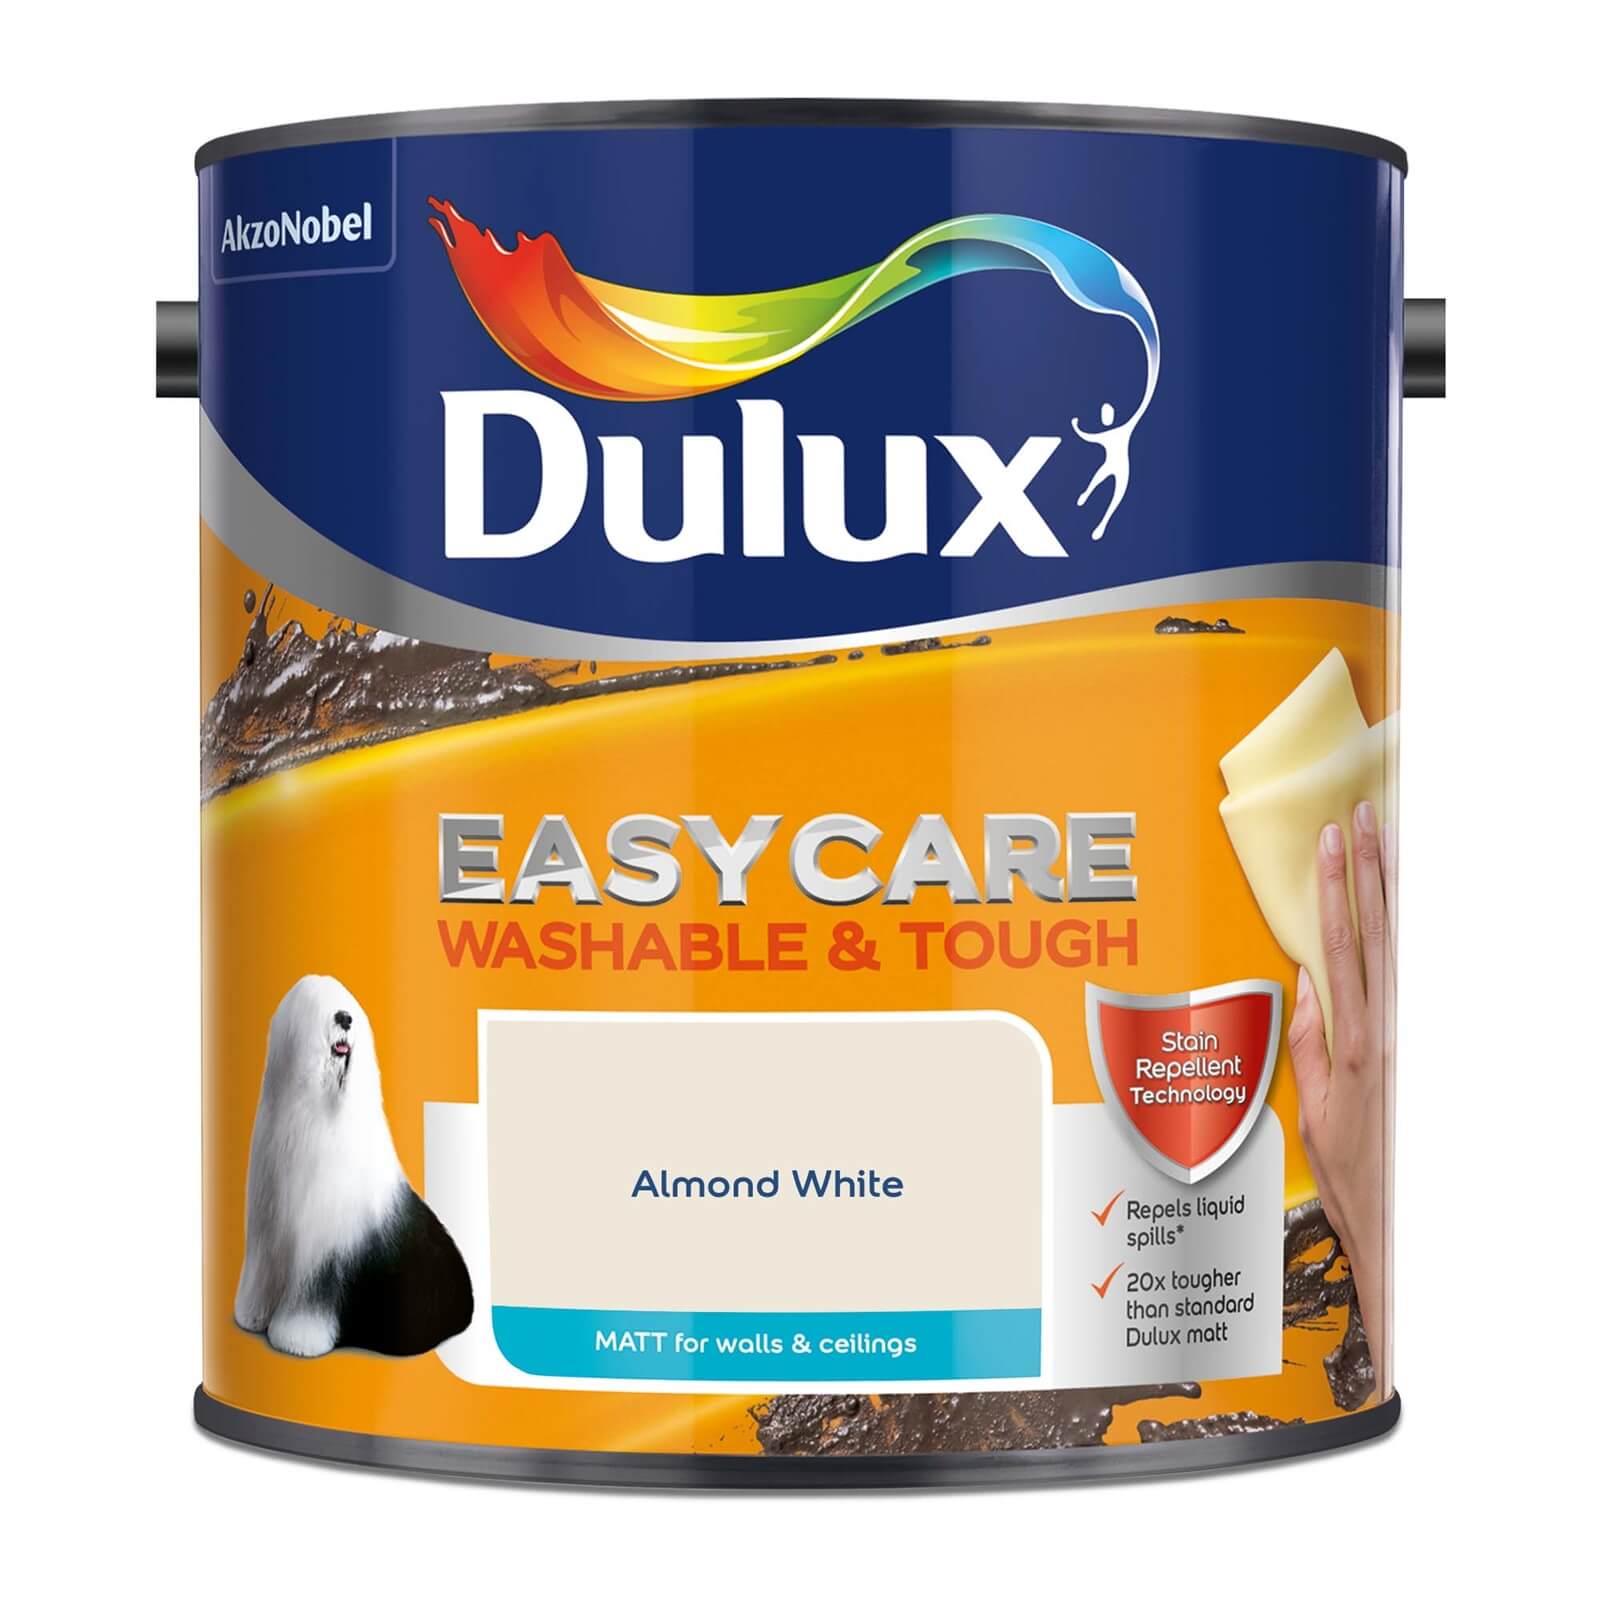 Dulux Easycare Washable & Tough Matt Paint Almond White - 2.5L